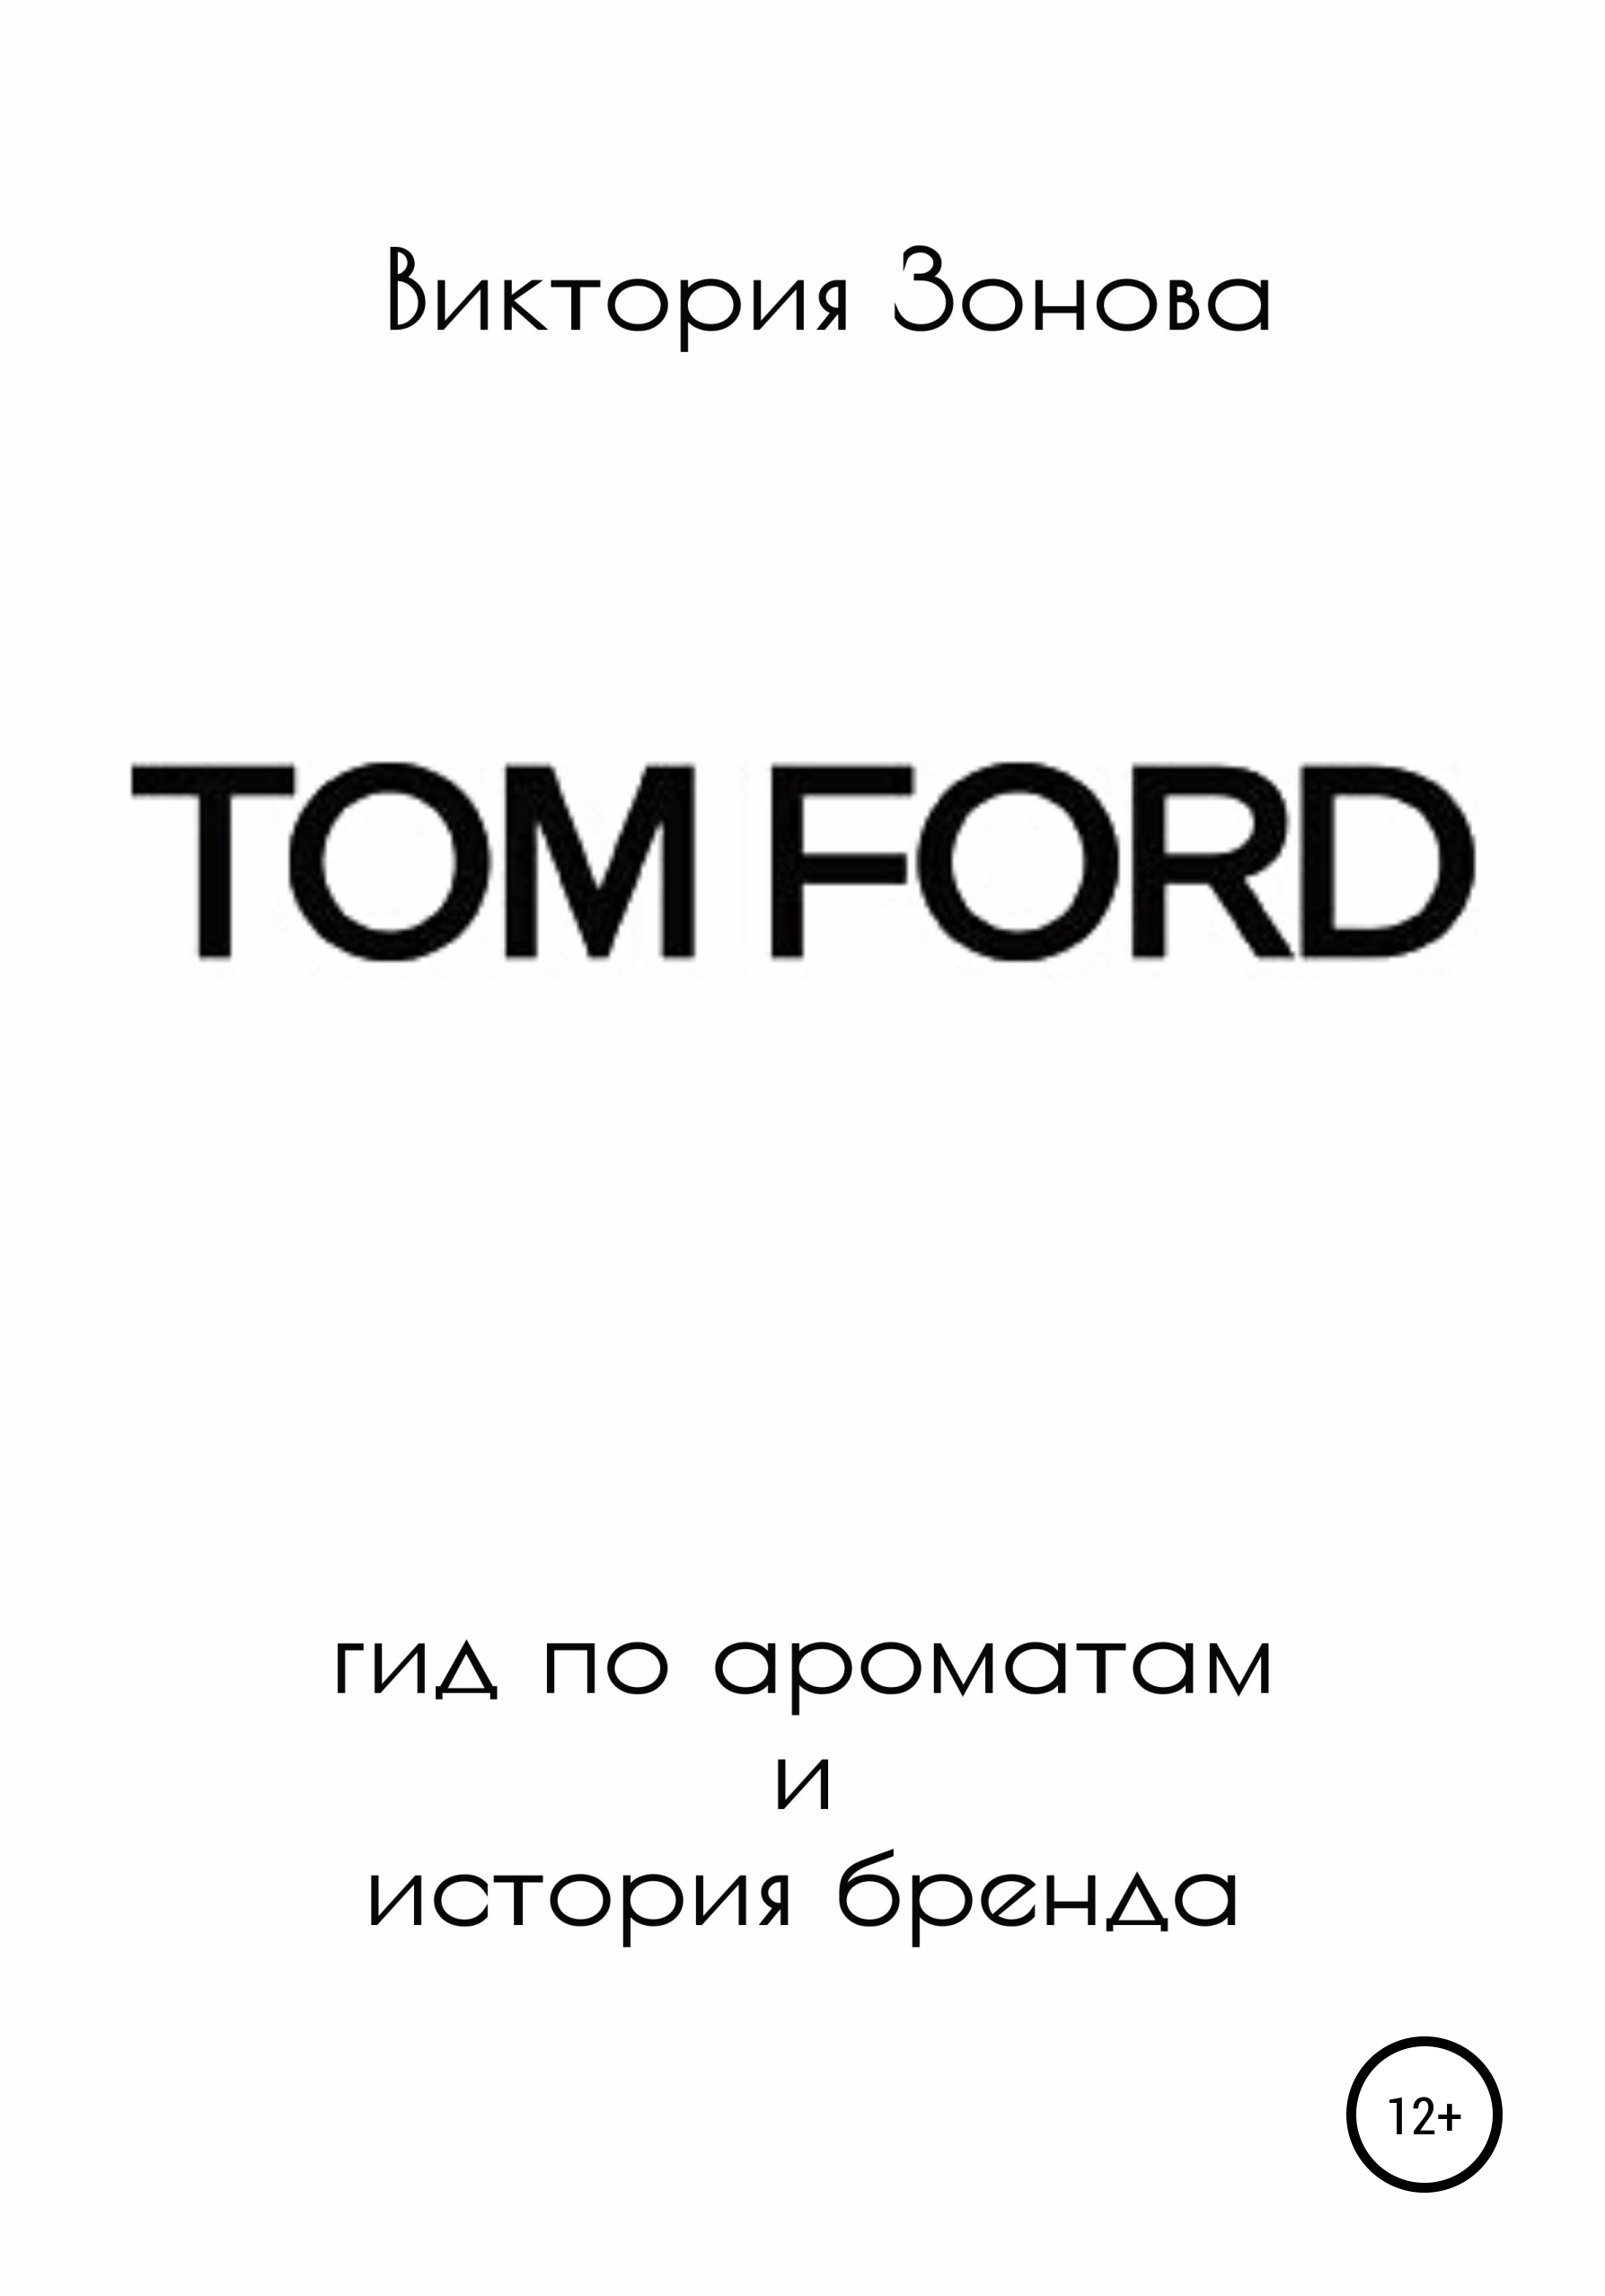 Книга тома форда. Книга том Форд. Том Форд история. Том Форд история бренда. История брендов книга.